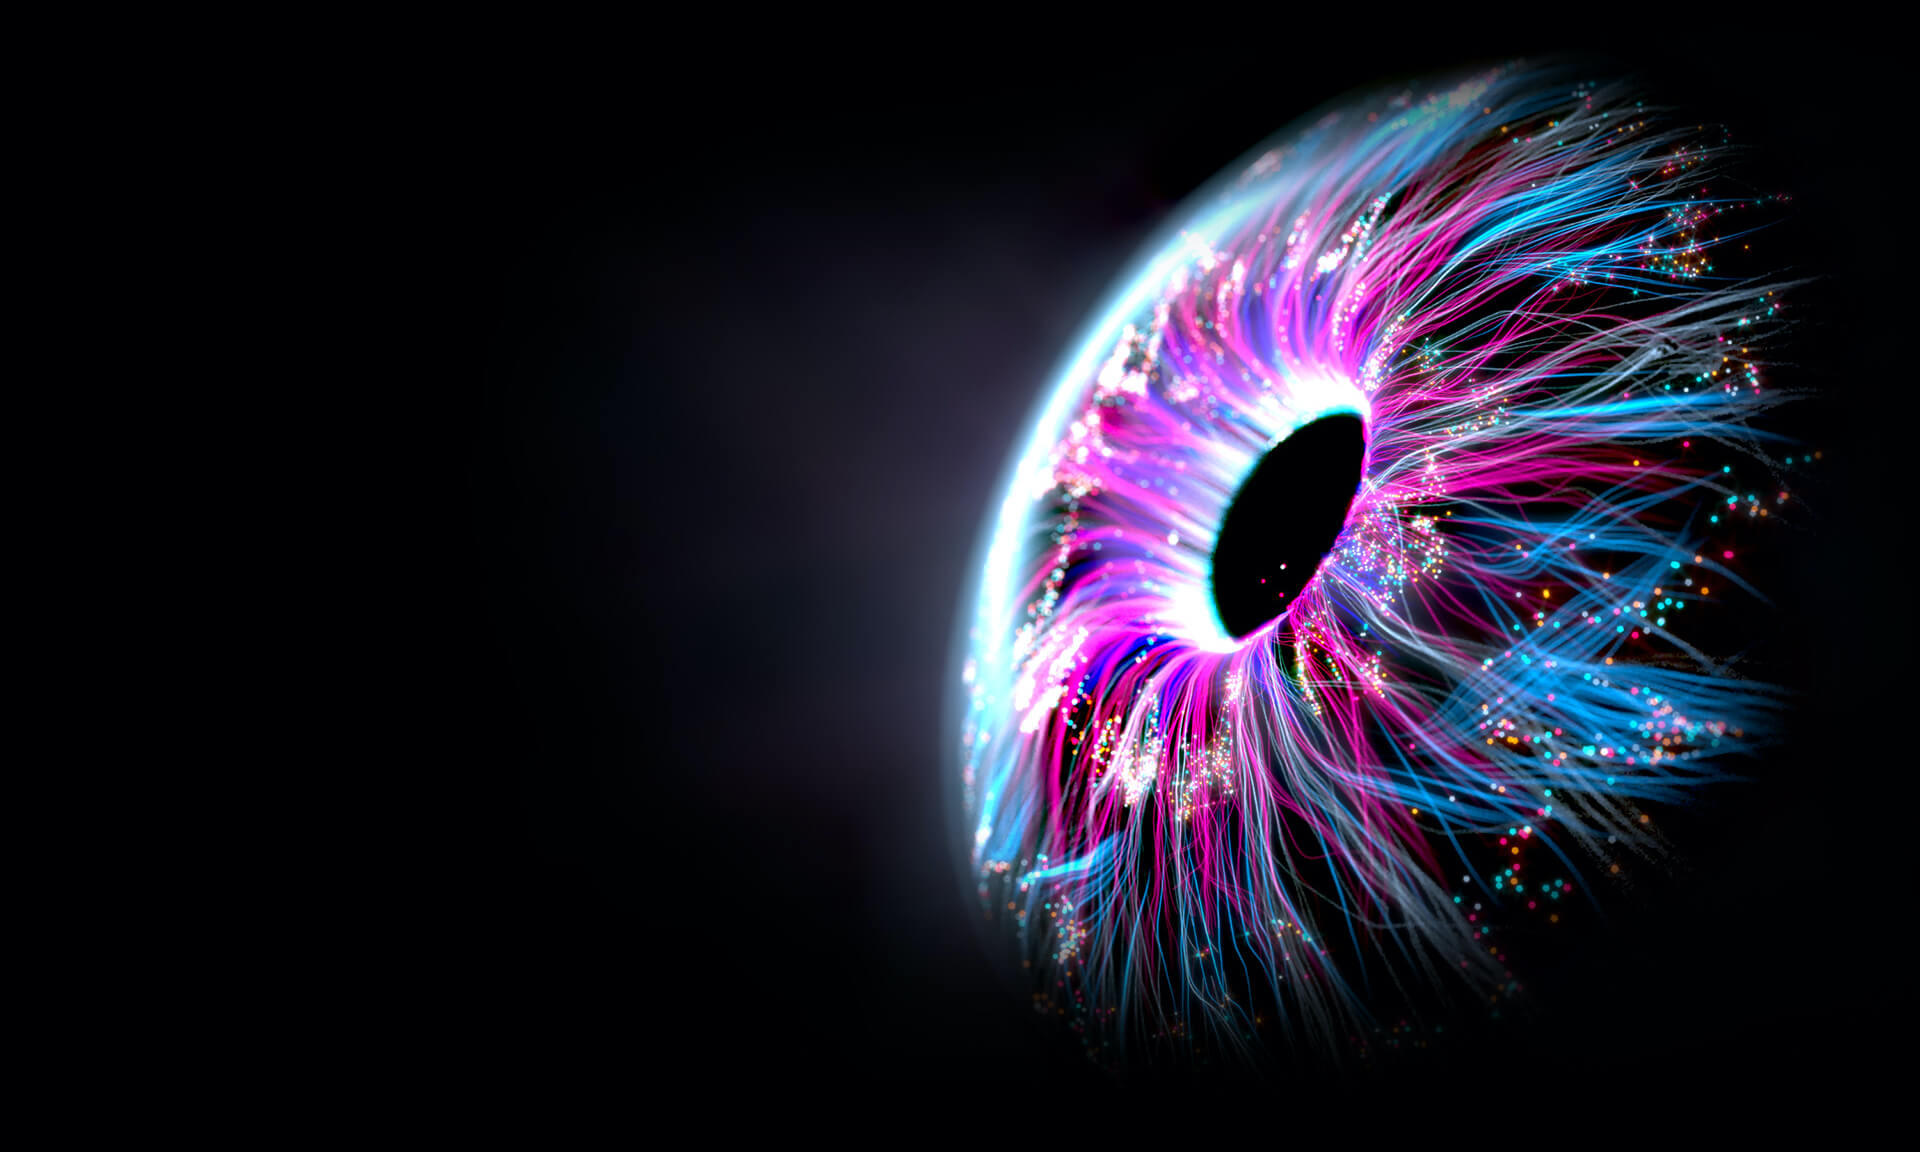 Image en gros plan d’un œil humain avec des volutes de lumière bleue et violette qui s’en dégagent